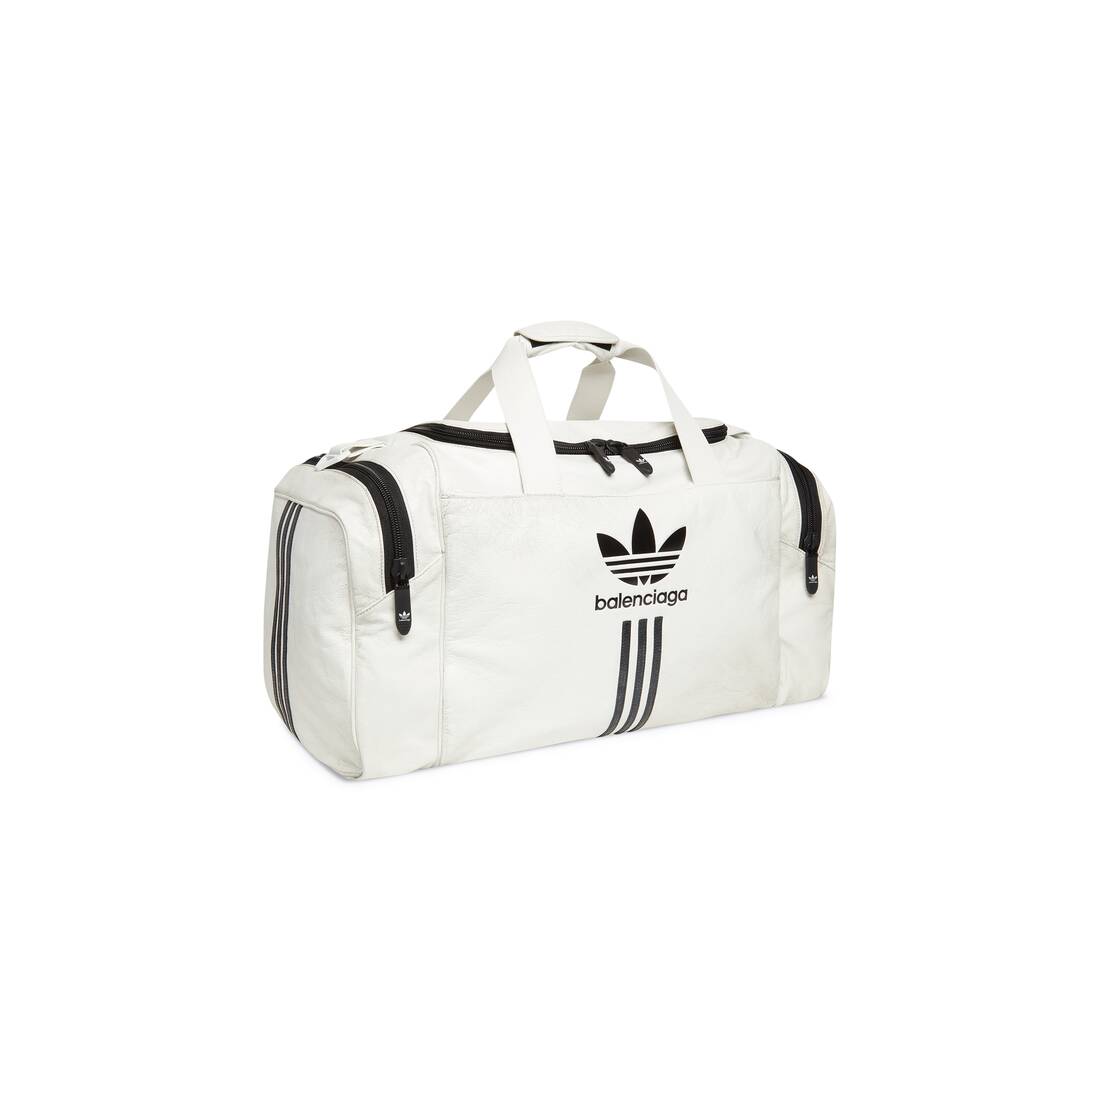 Men's Balenciaga / Adidas Bag in White | Balenciaga US